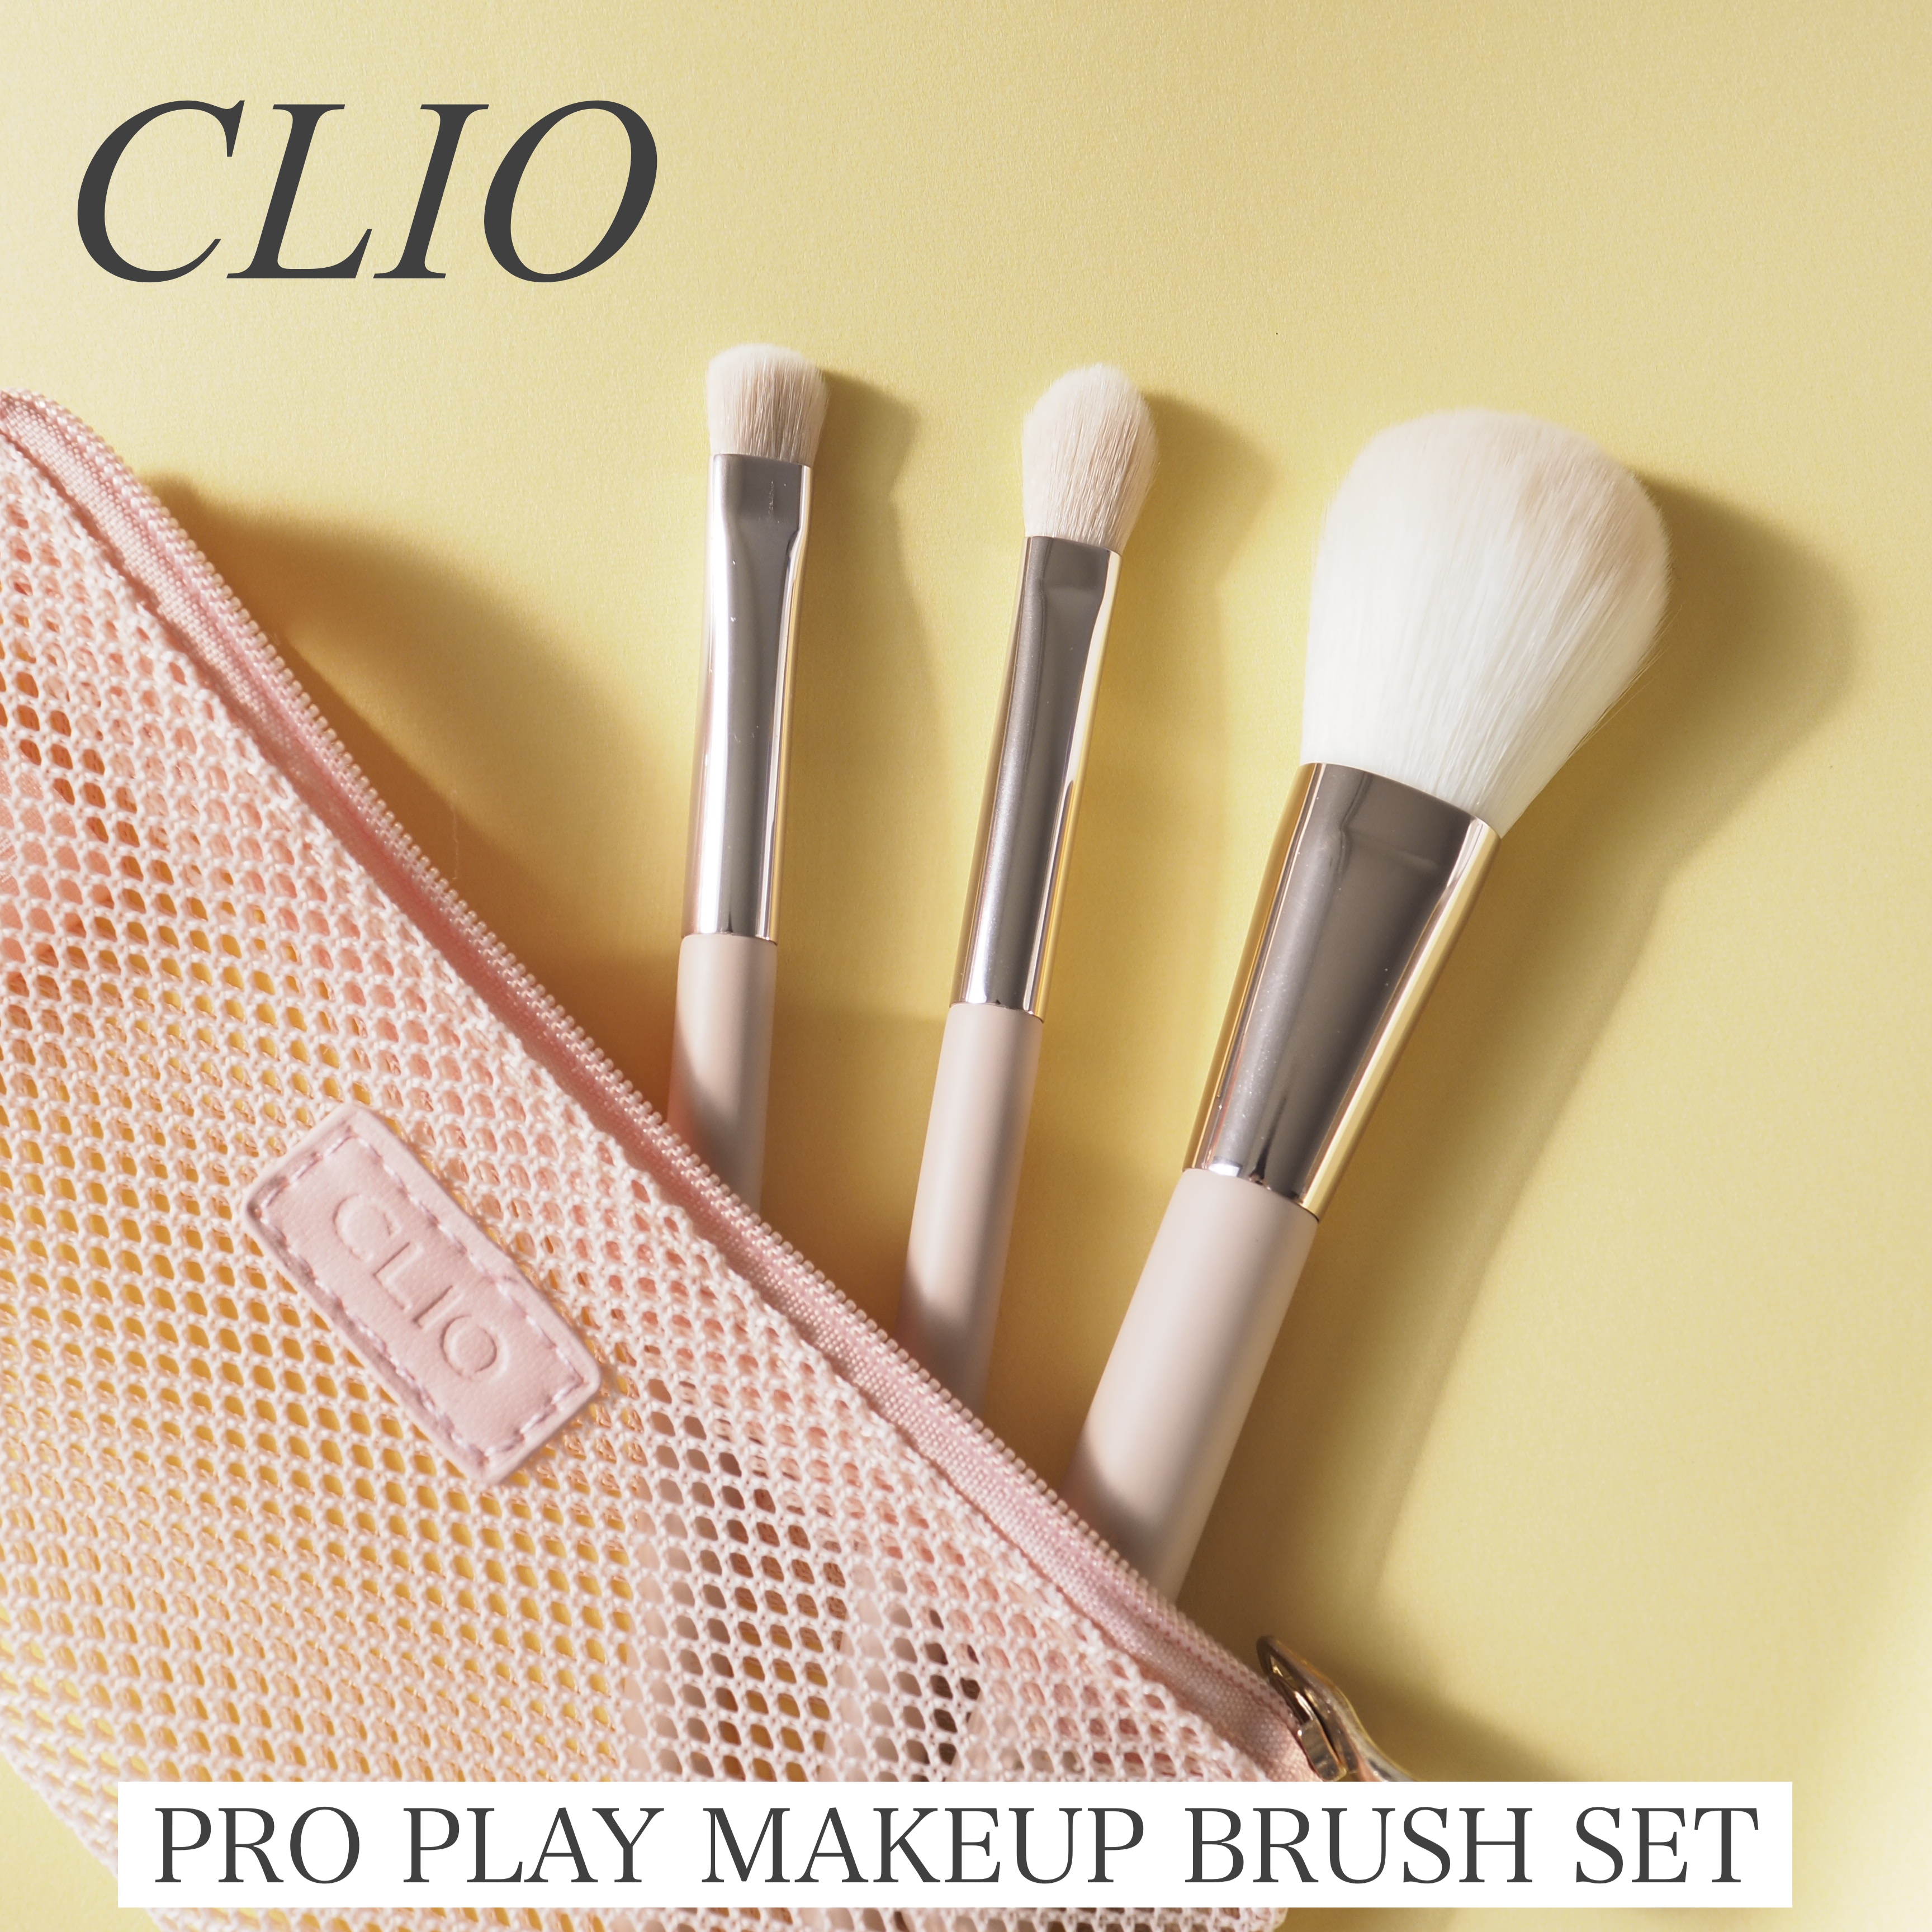 CLIO(クリオ) プロ プレイ メイクアップ ブラシ セットの良い点・メリットに関するaquaさんの口コミ画像1